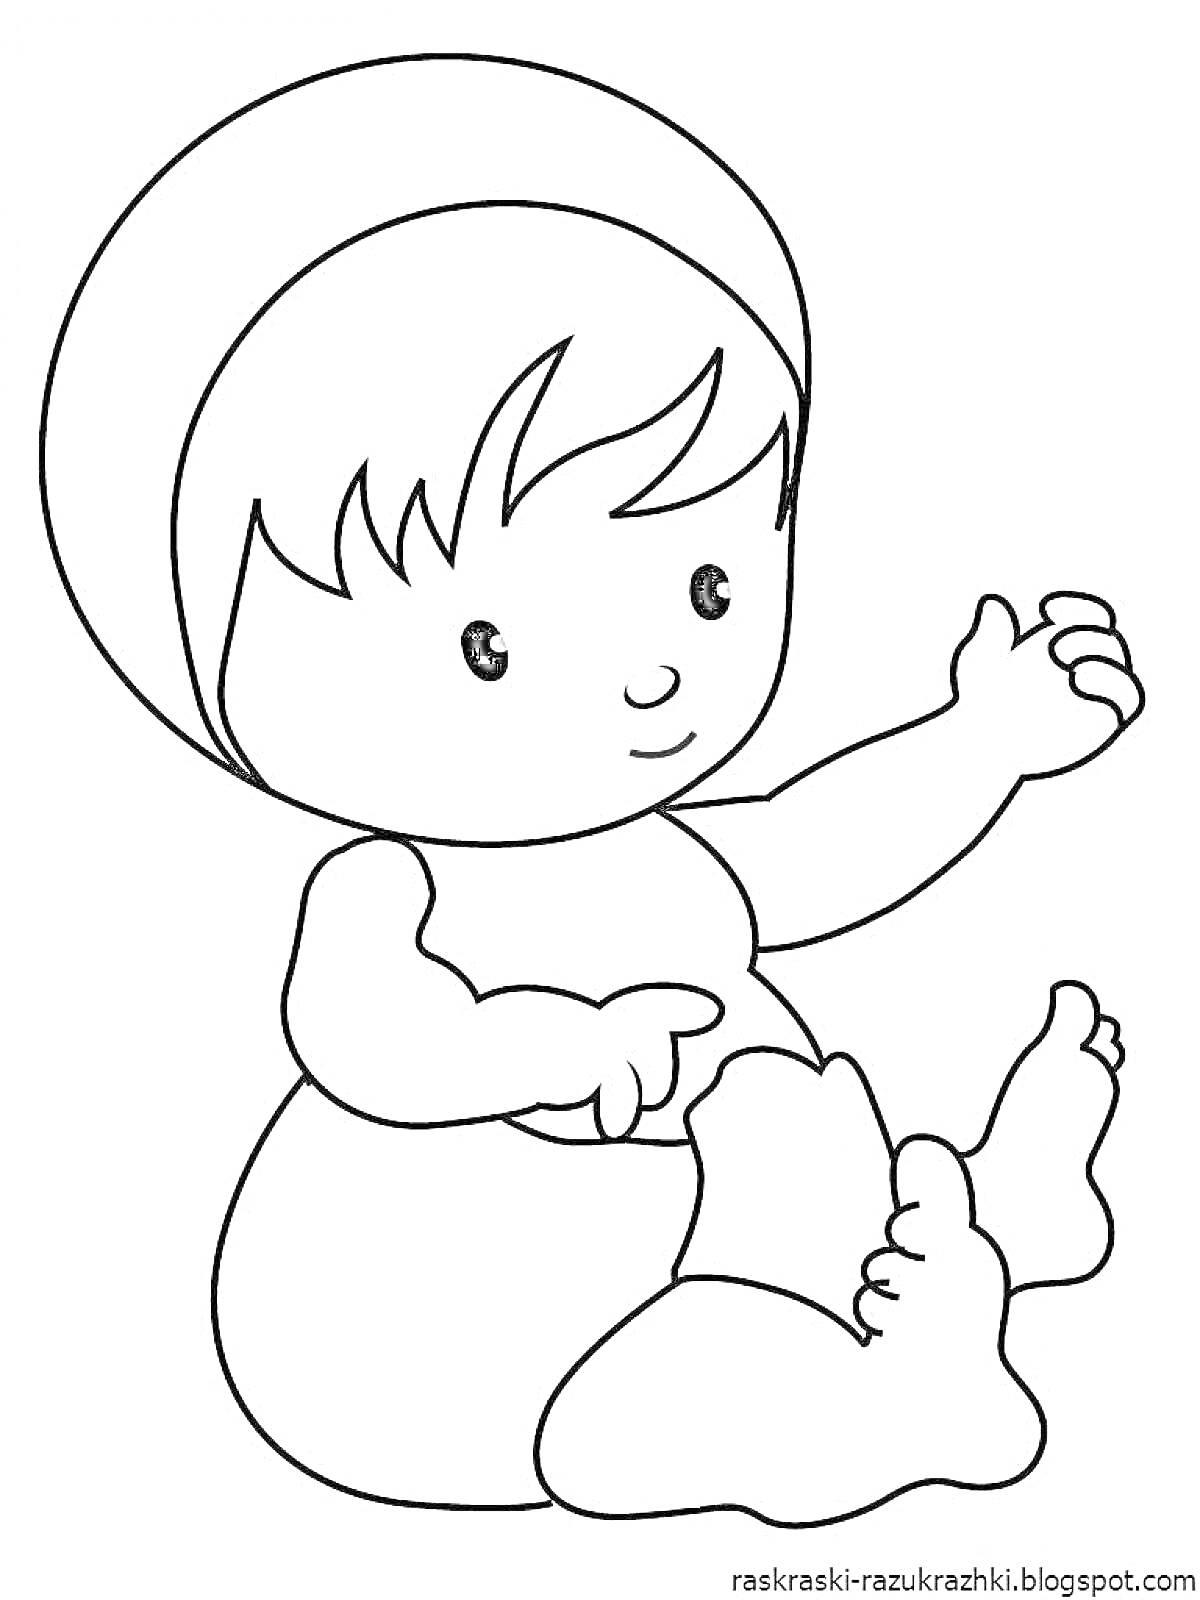 ребенок в шапочке, сидящий на полу, держит одну руку вверх